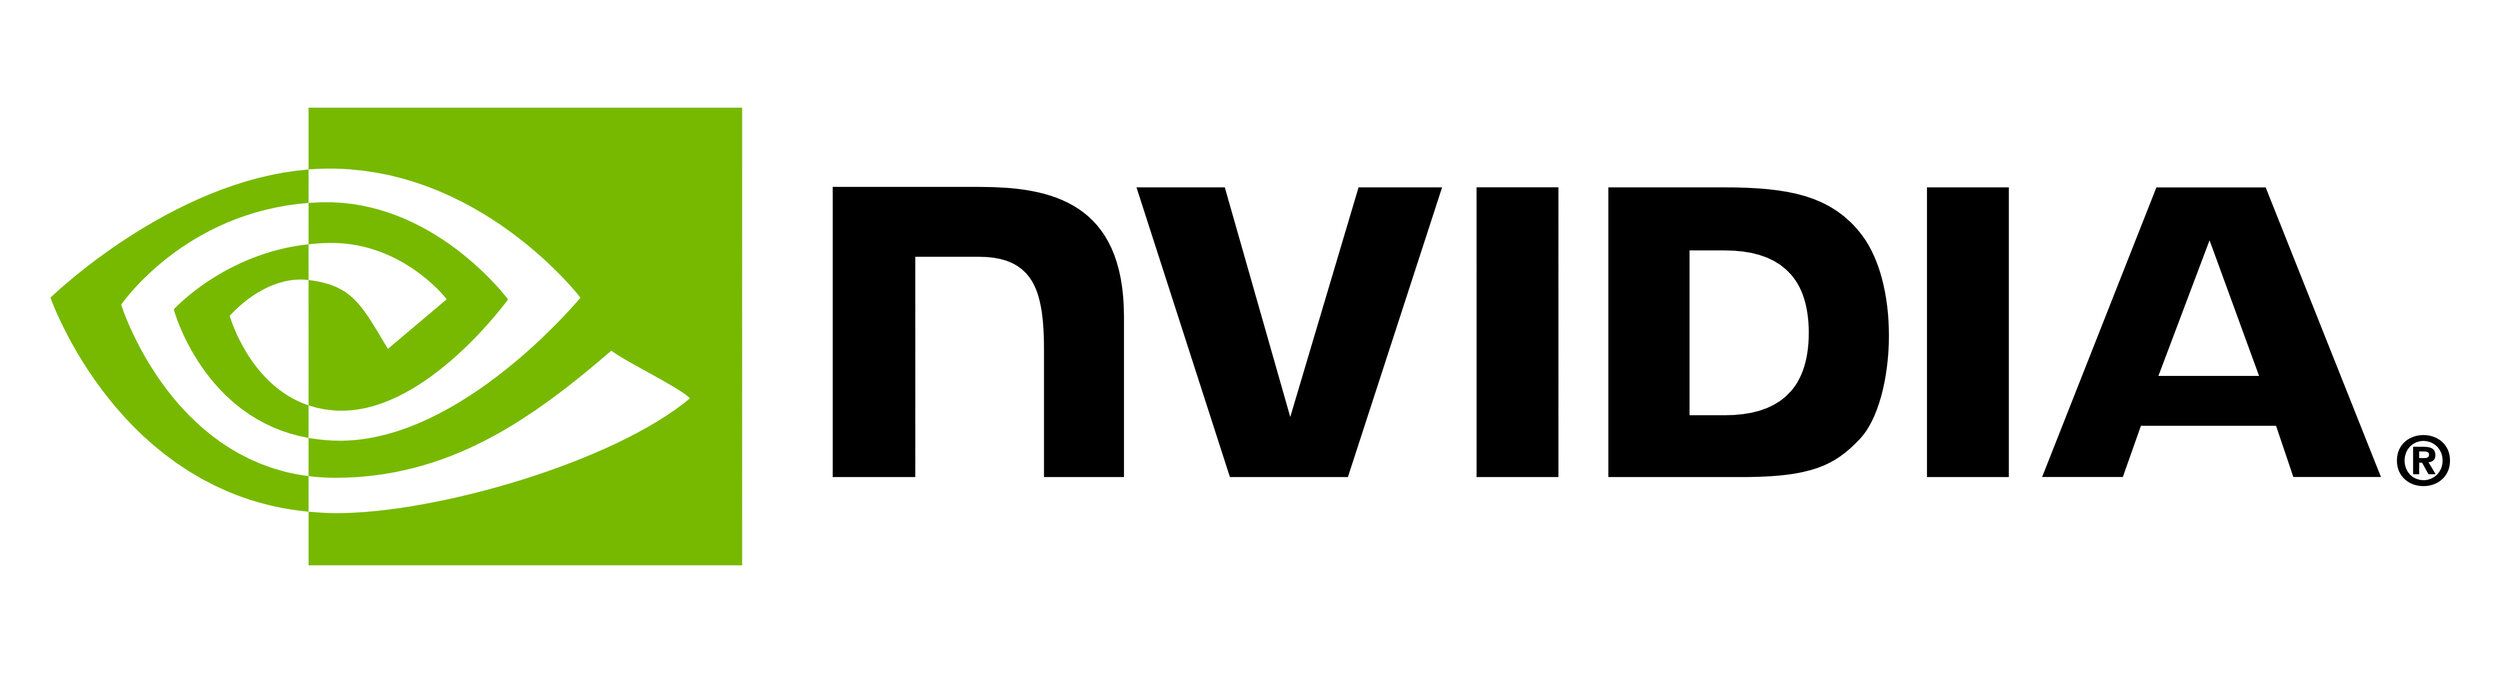 NVIDIA_logo.jpg